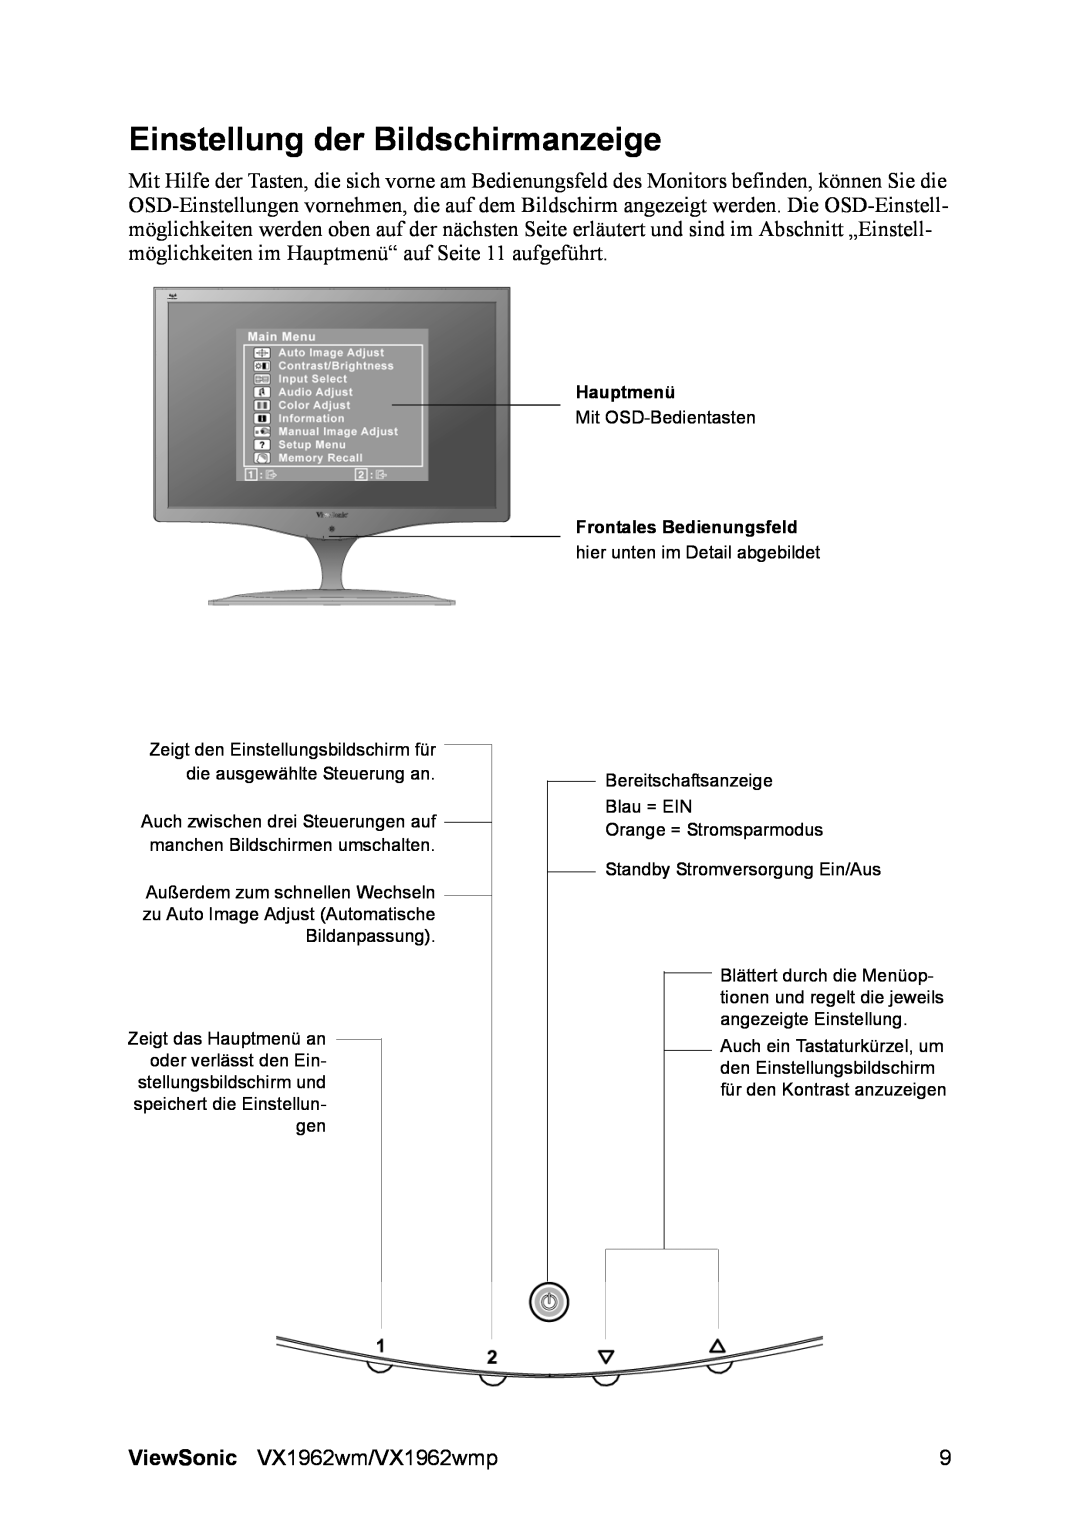 ViewSonic VX1962wm manual Einstellung der Bildschirmanzeige, Hauptmenü, Frontales Bedienungsfeld 